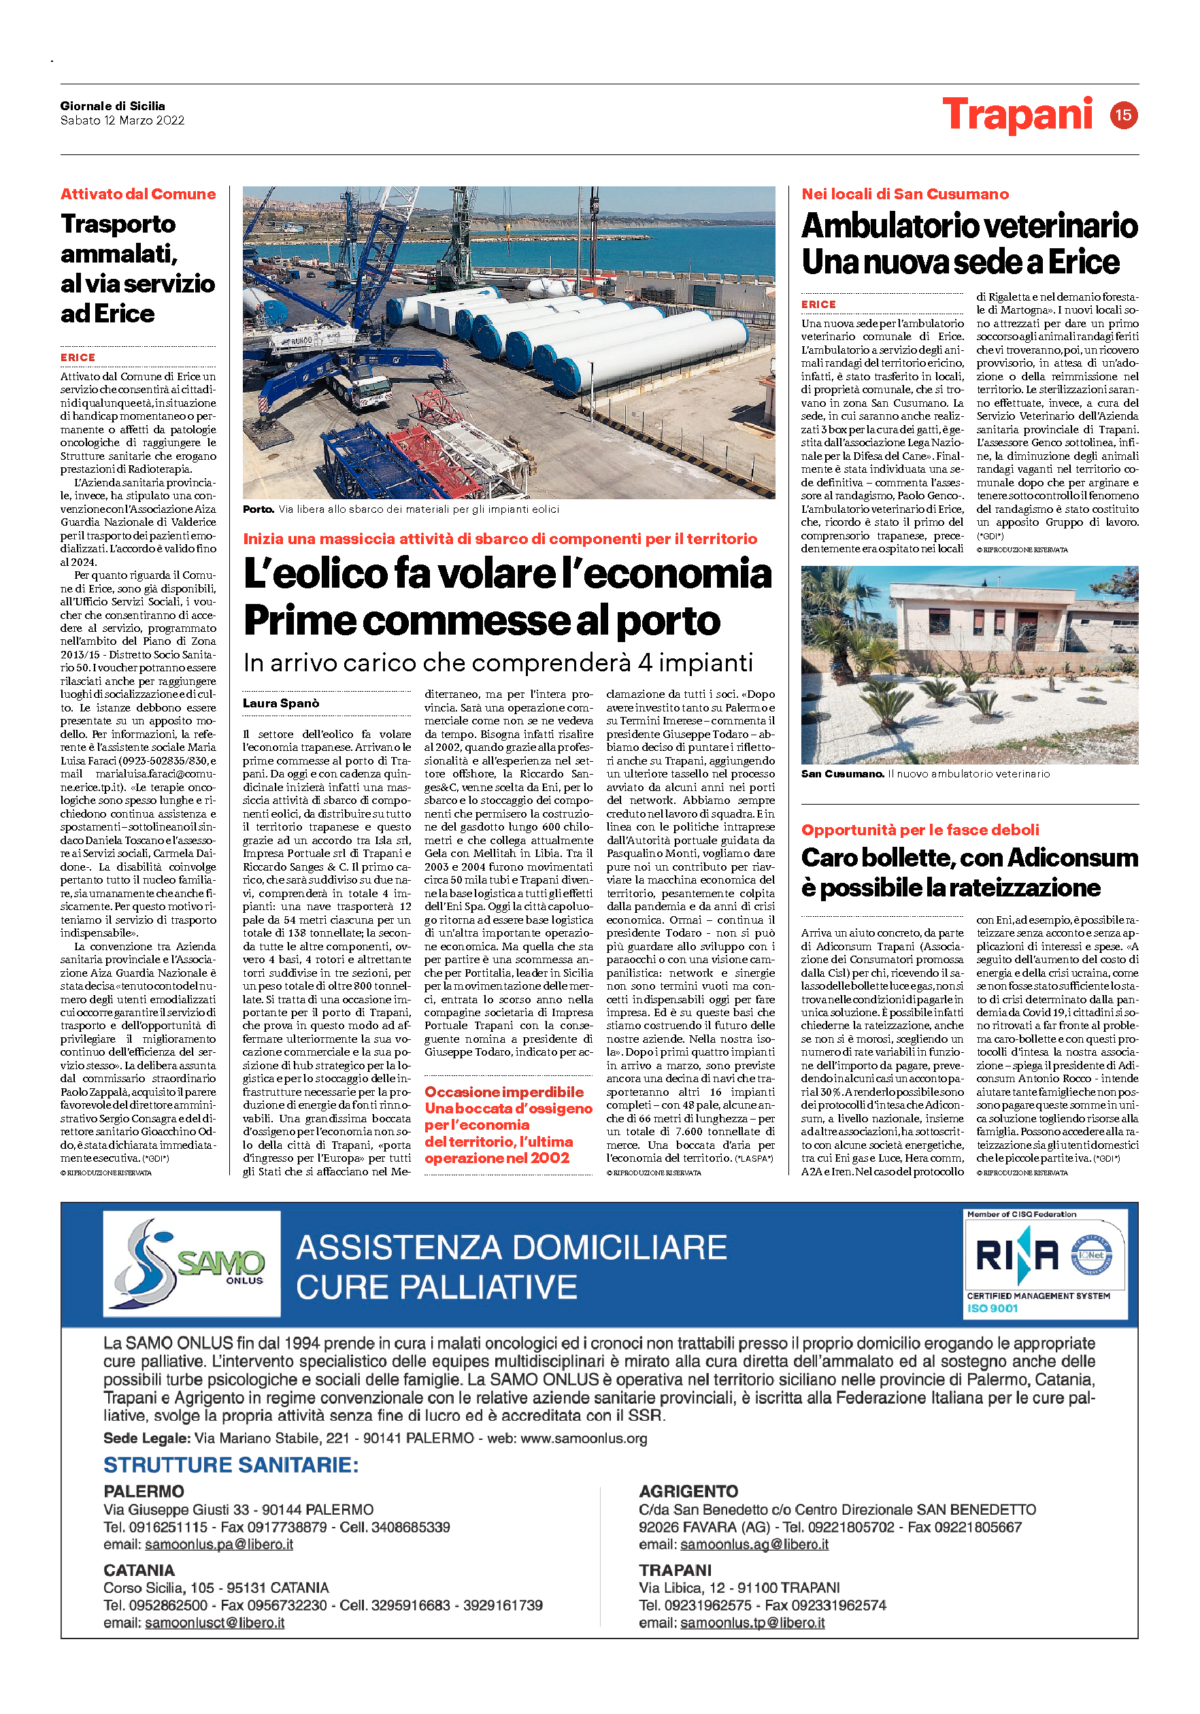 Giornale di Sicilia – Portitalia scommette sull’eolico